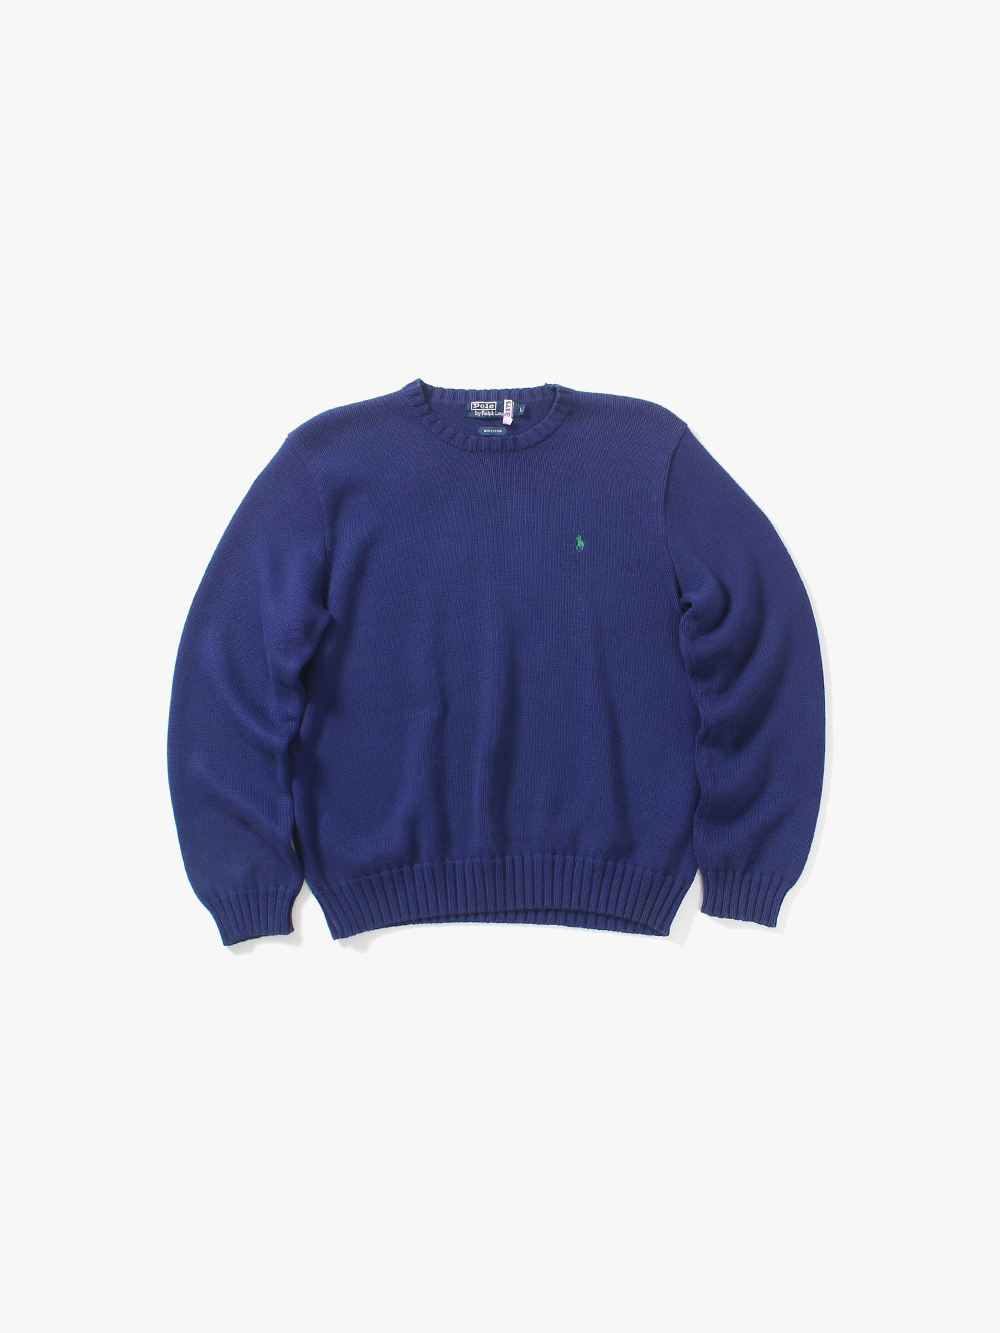 [ L ] Polo Ralph Lauren Sweater (6288)